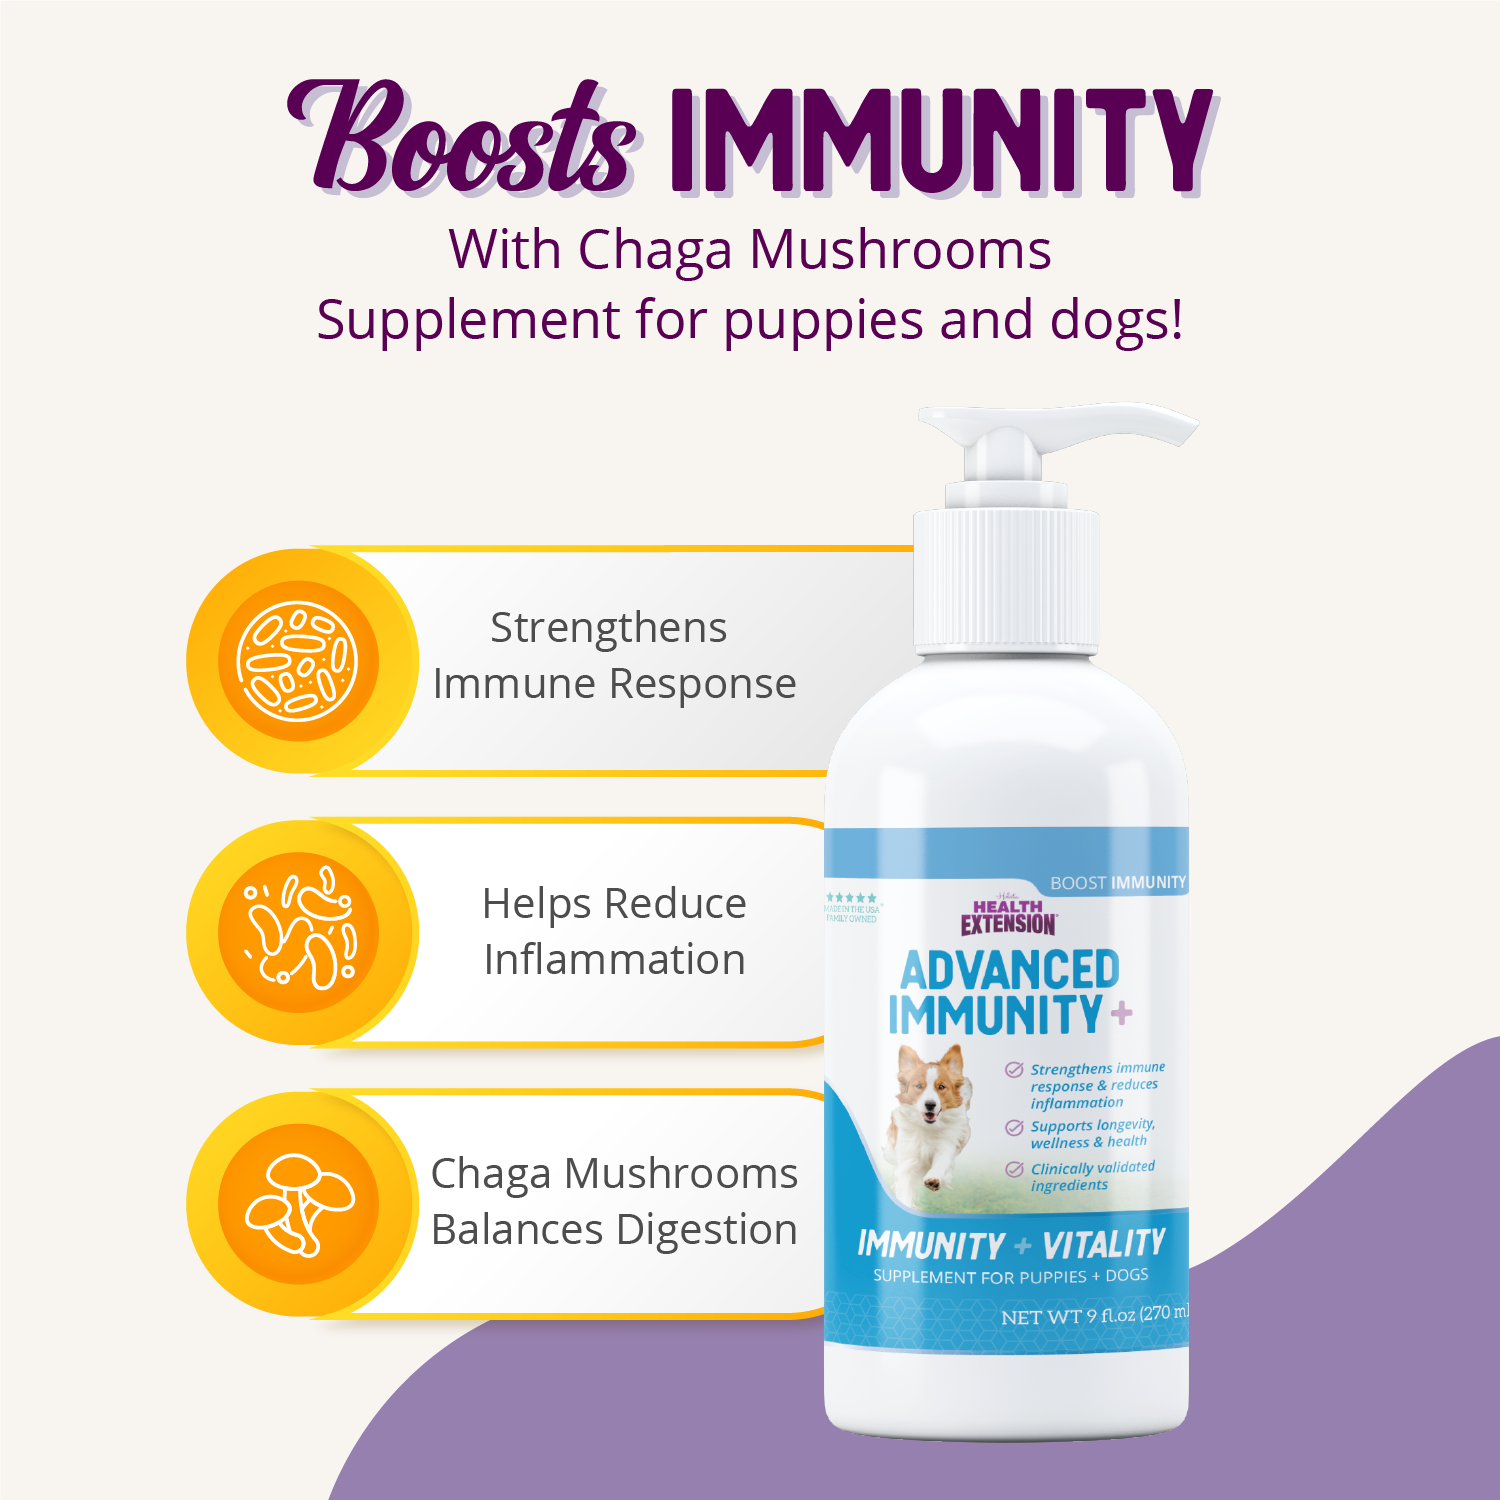 Advanced Immunity Facts